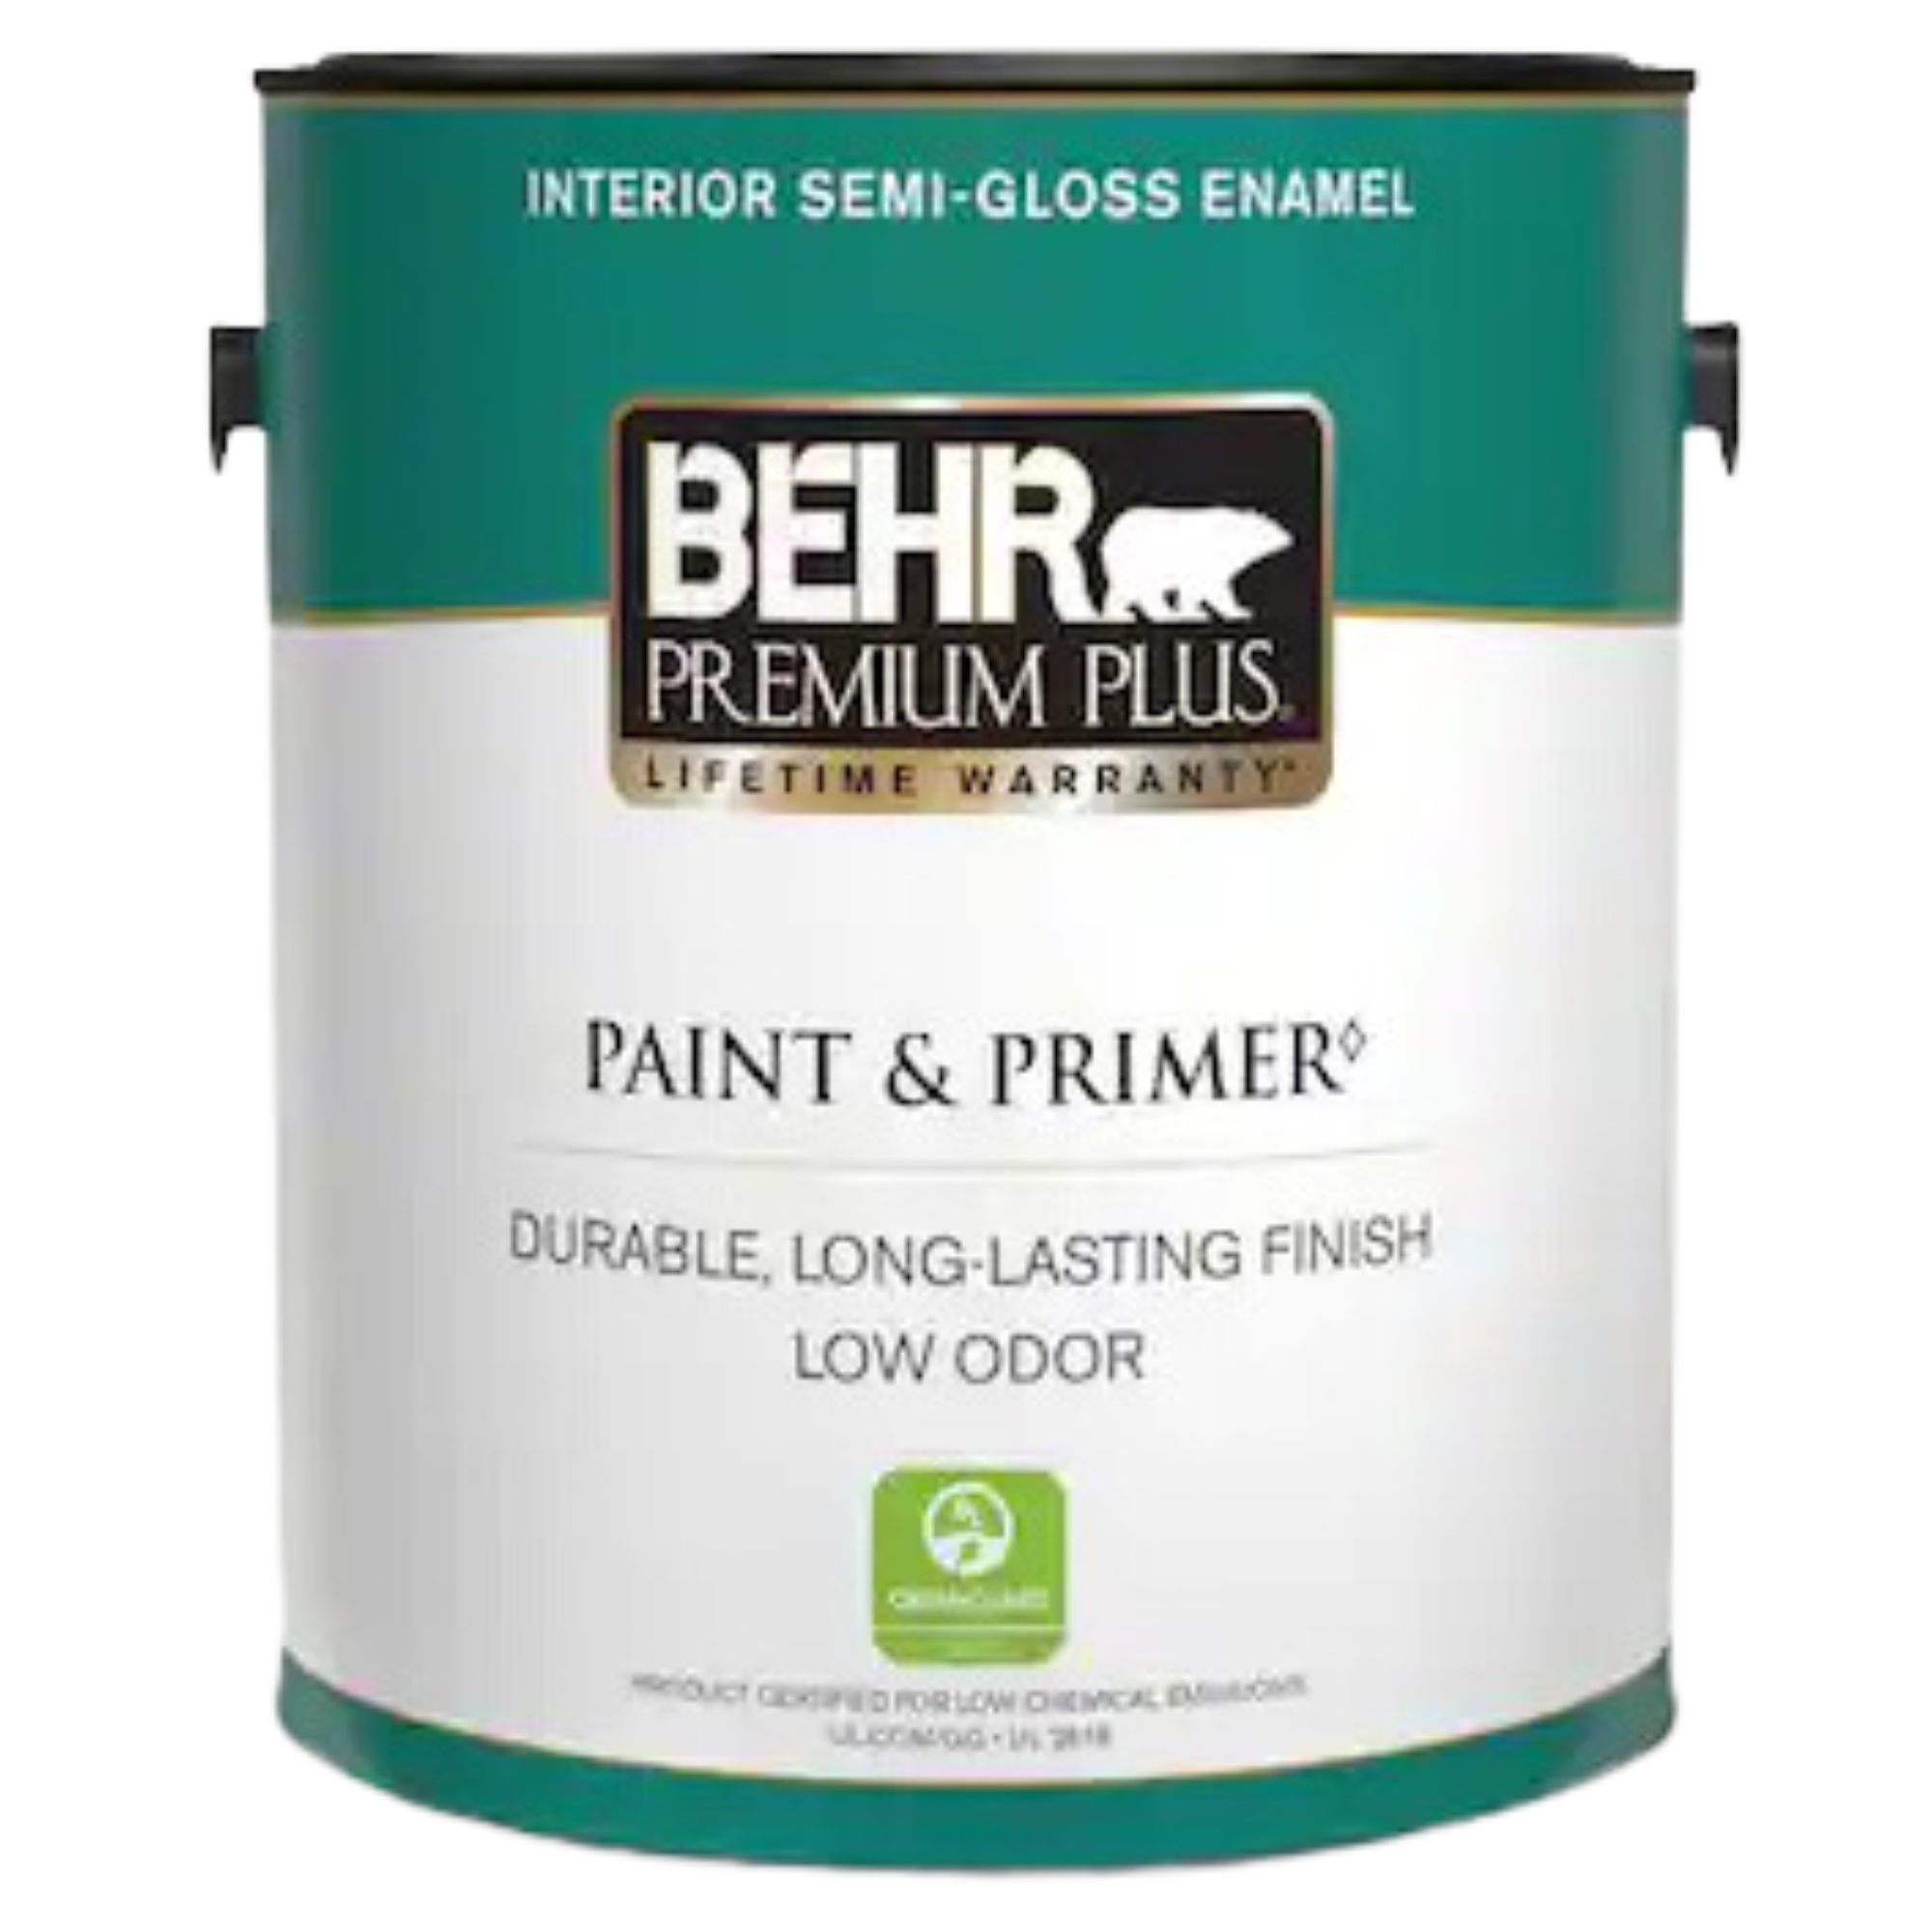 Behr Premium Plus Interior Paint & Primer